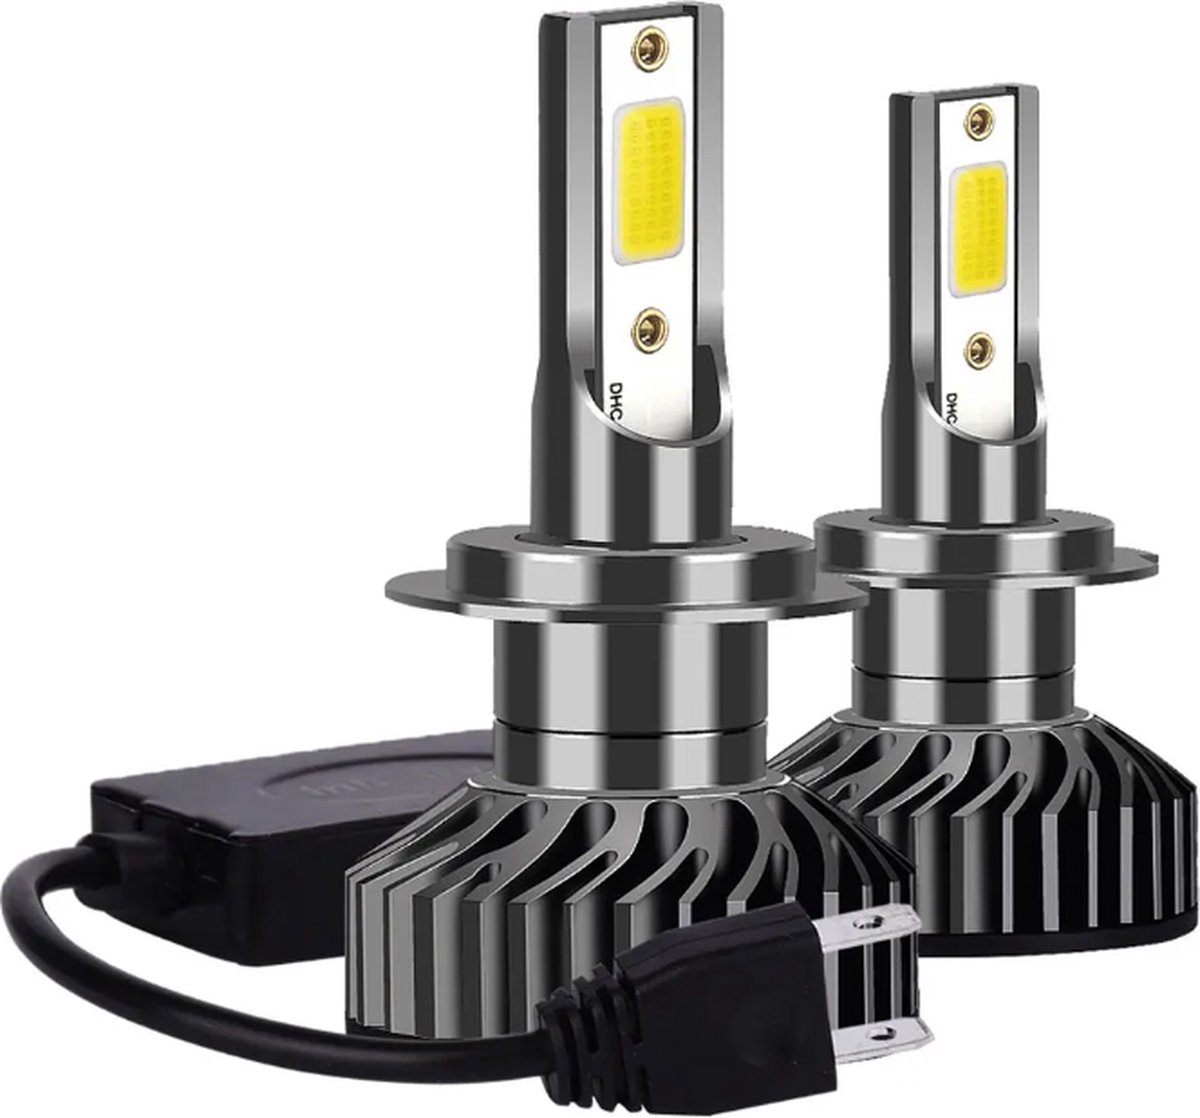 TLVX H7 55 Watt Canbus LED lampen – Storingsvrij – Koplampen – Auto - Motor - Headlights - 8000K wit licht – Autoverlichting – 12V – 55w halogeen vervanger - Dimlicht – Grootlicht – 32.000 Lumen (2 stuks)